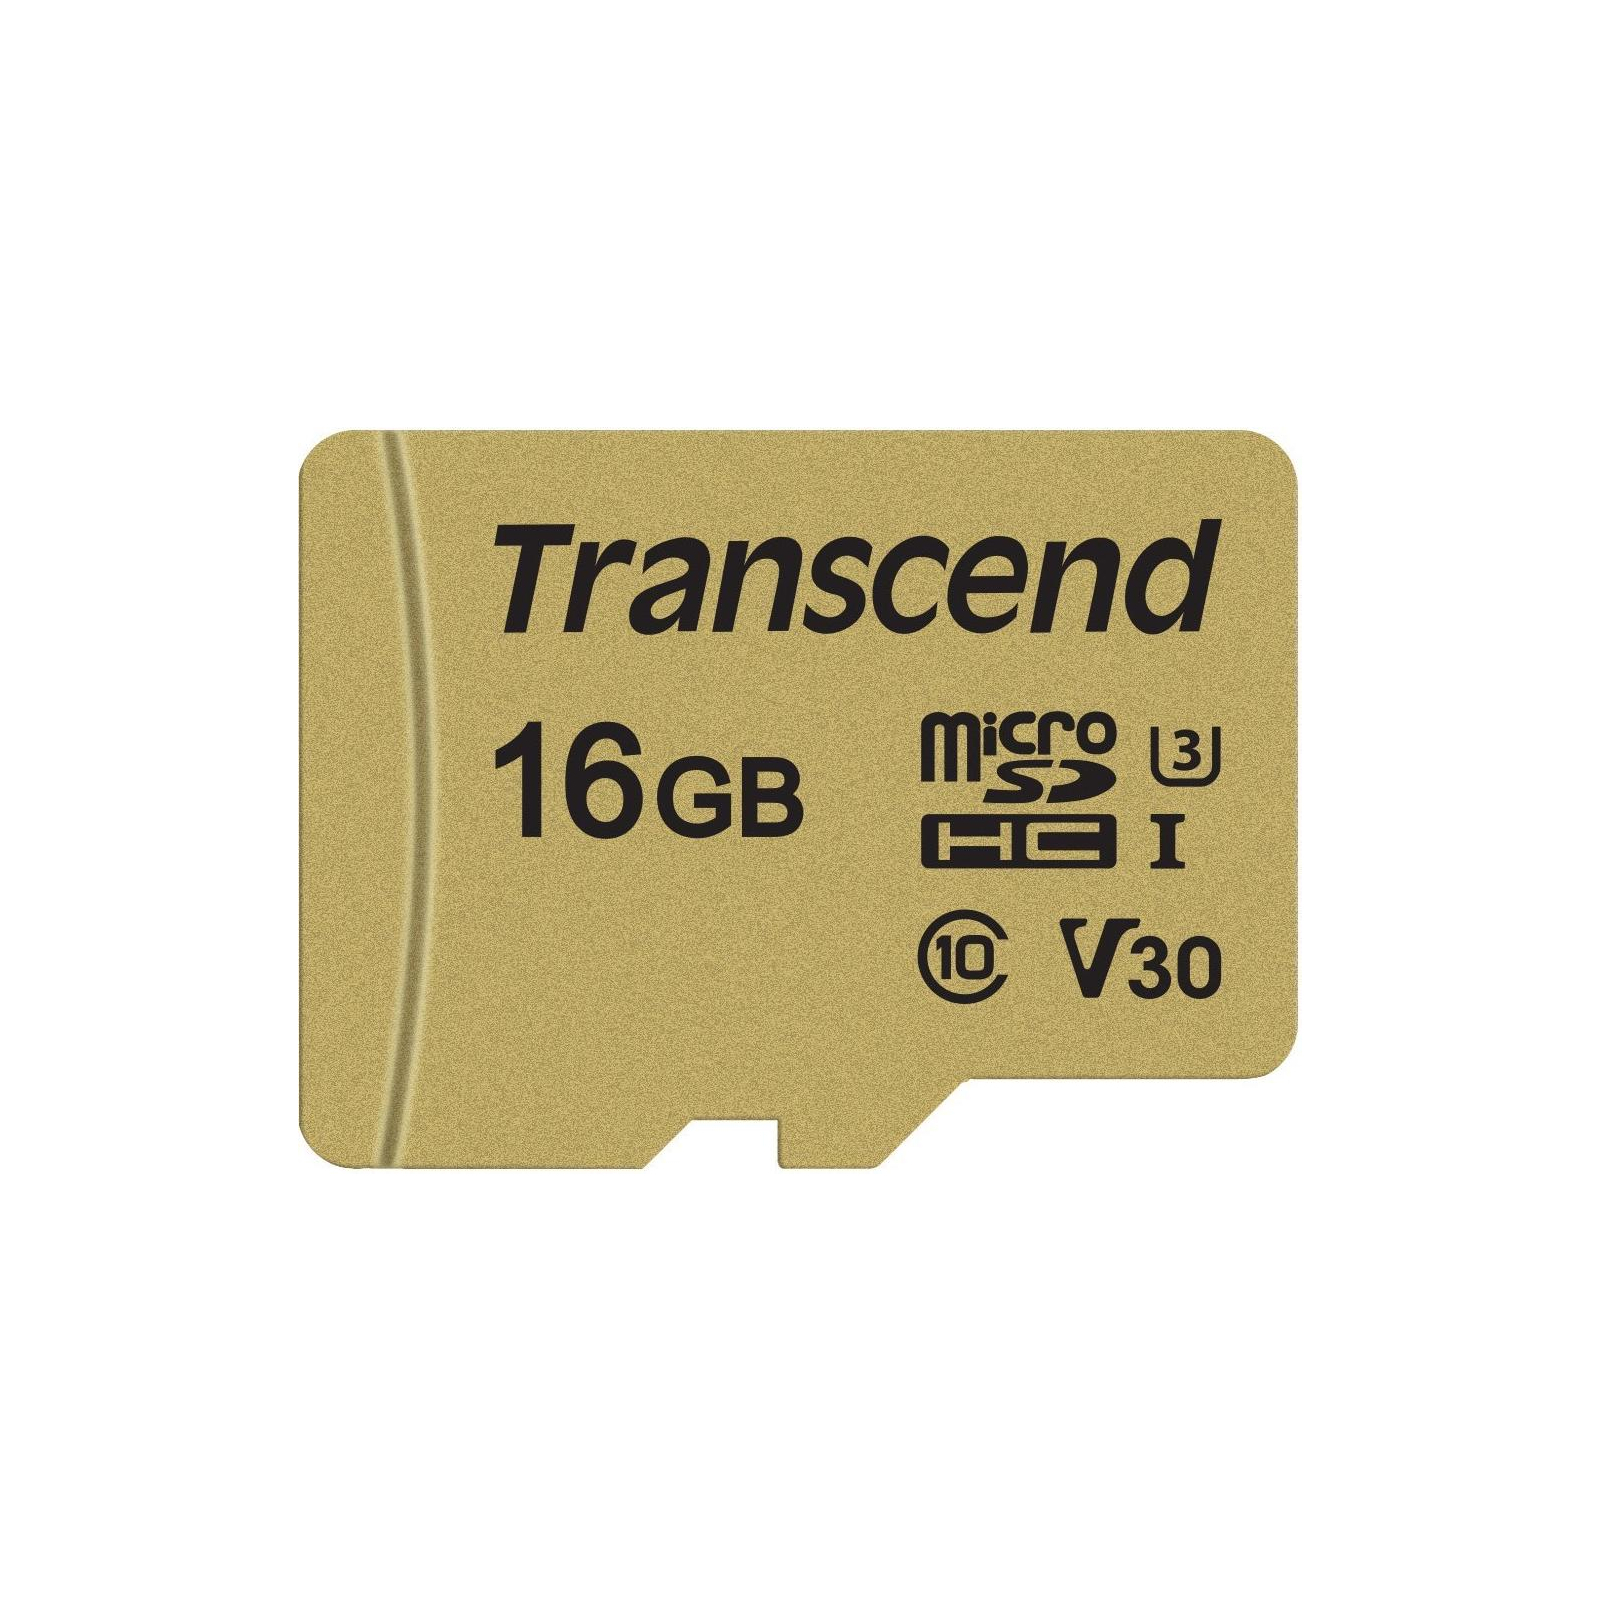 Карта памяти Transcend 16GB microSDHC class 10 UHS-I U3 V30 (TS16GUSD500S)